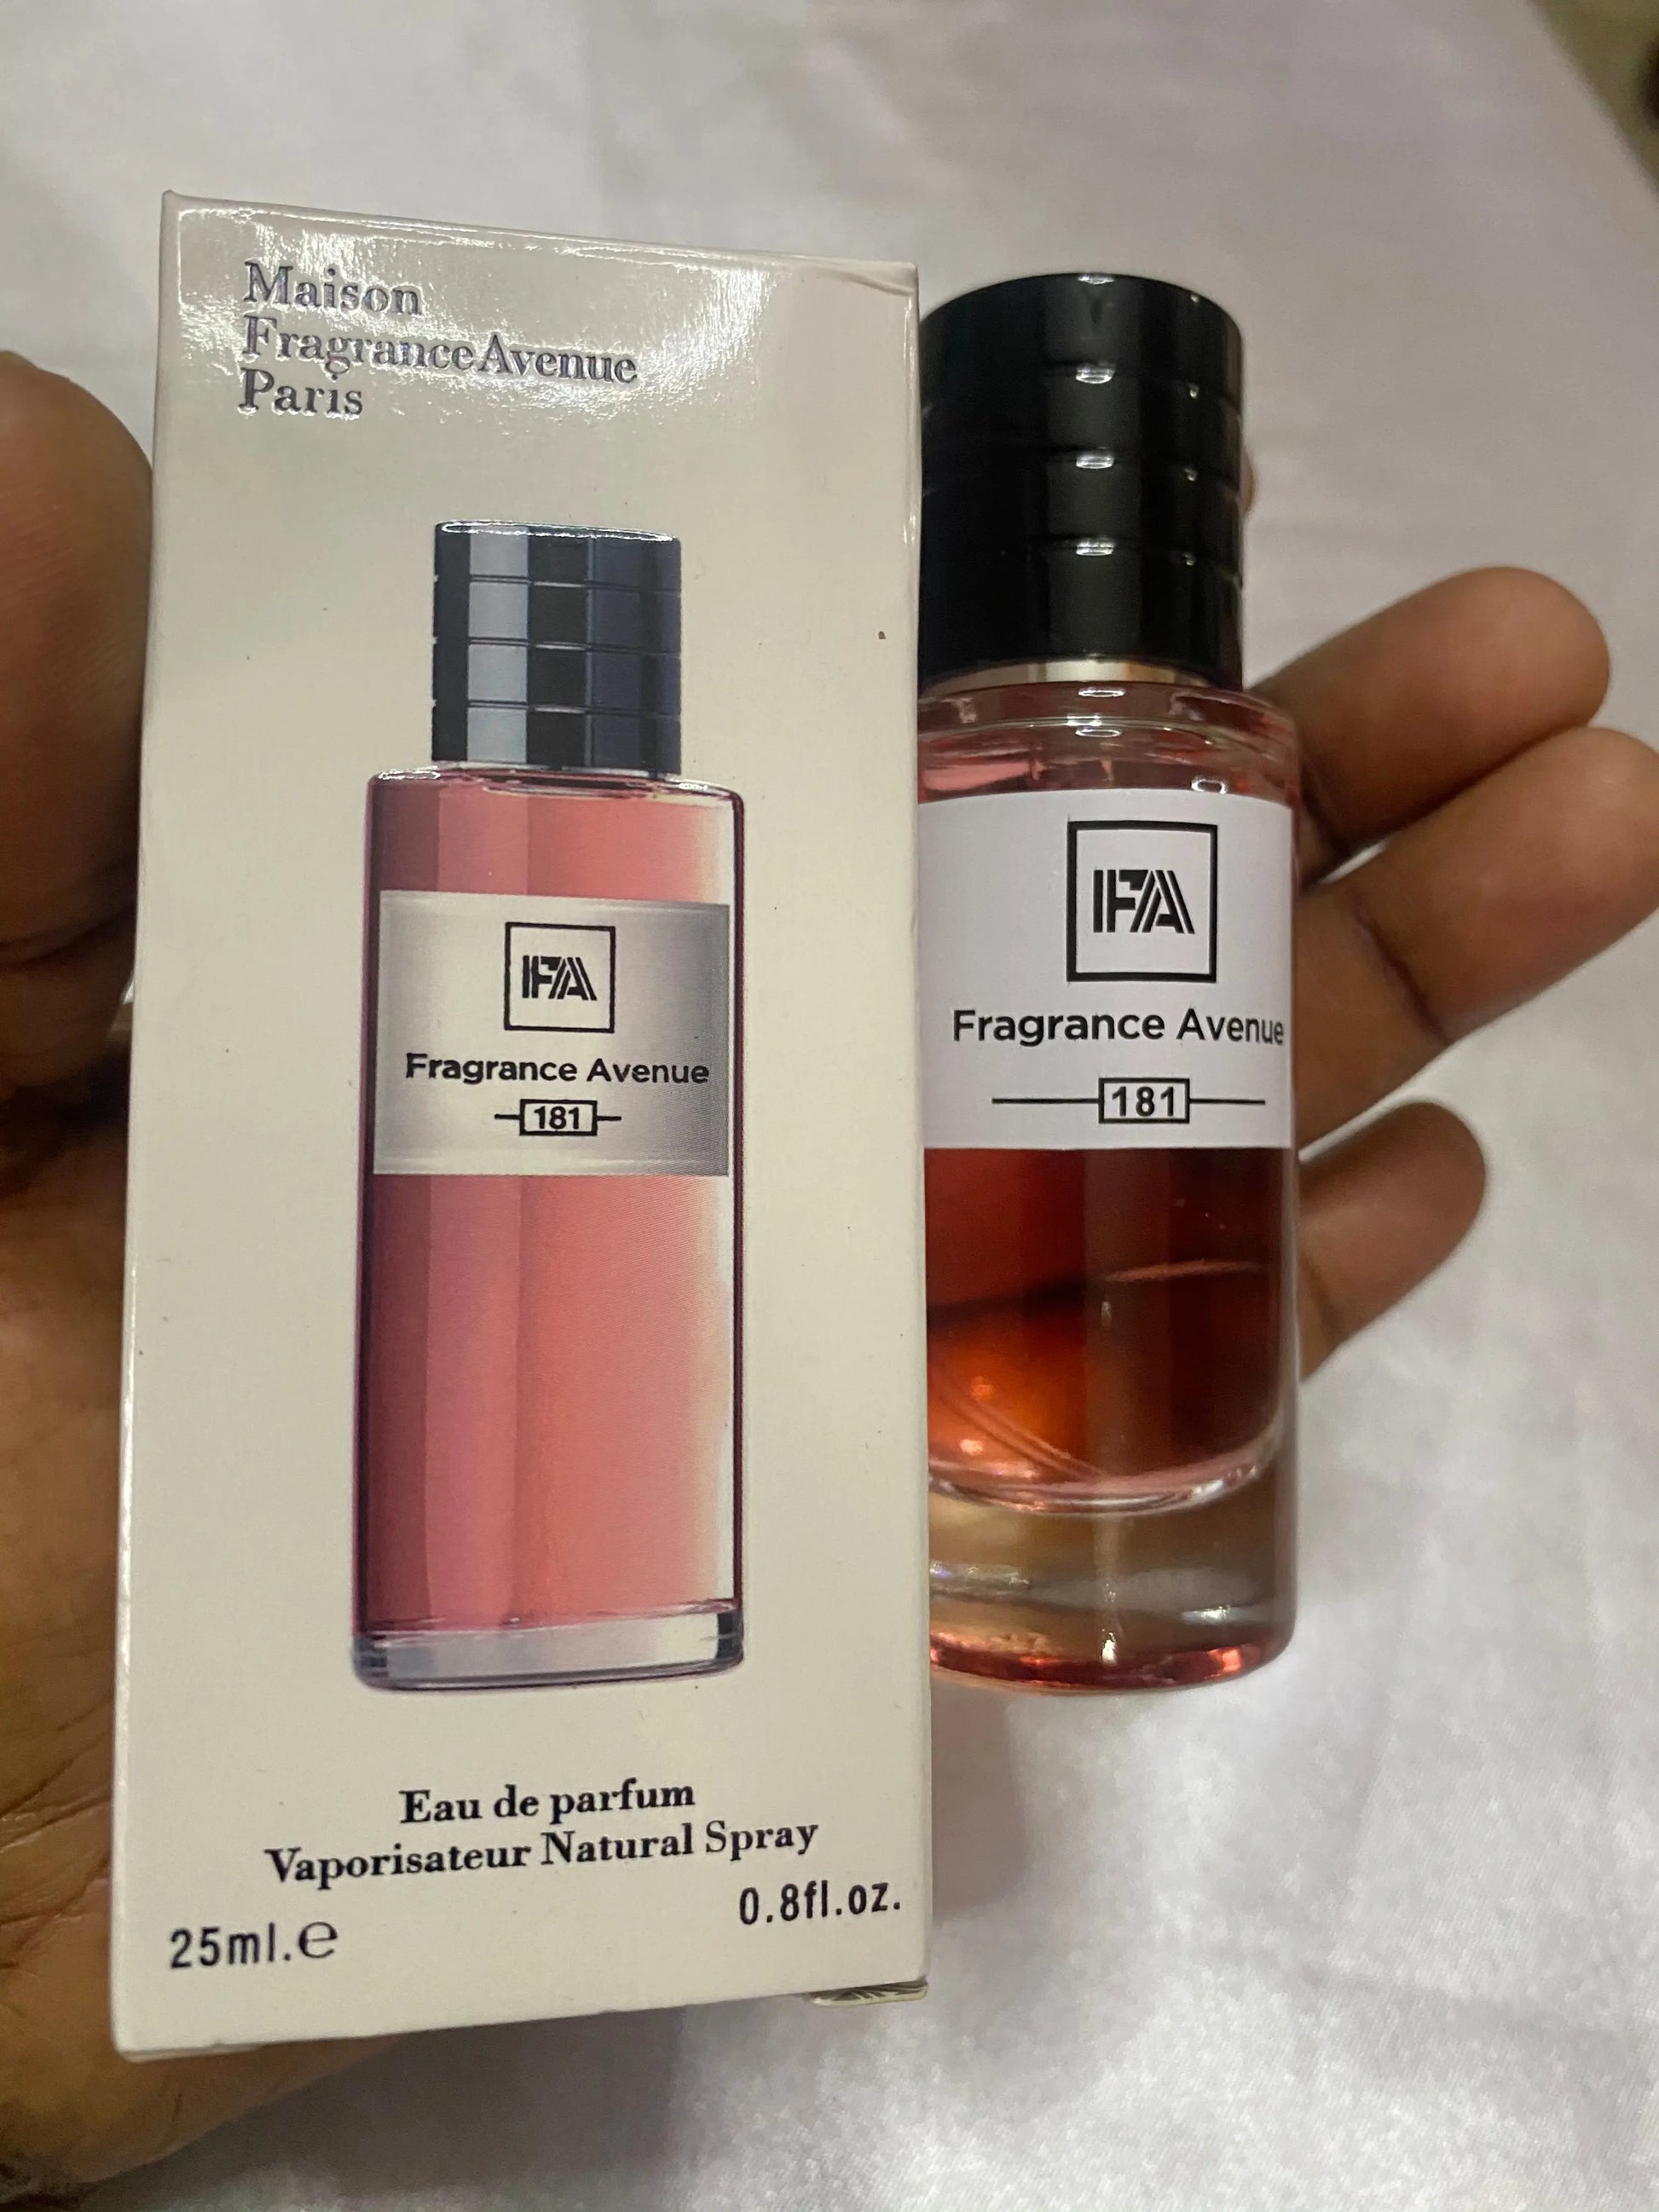 Fragrance Avenue Mini Perfume No 181 La Mimz Beauty & Fashion Store